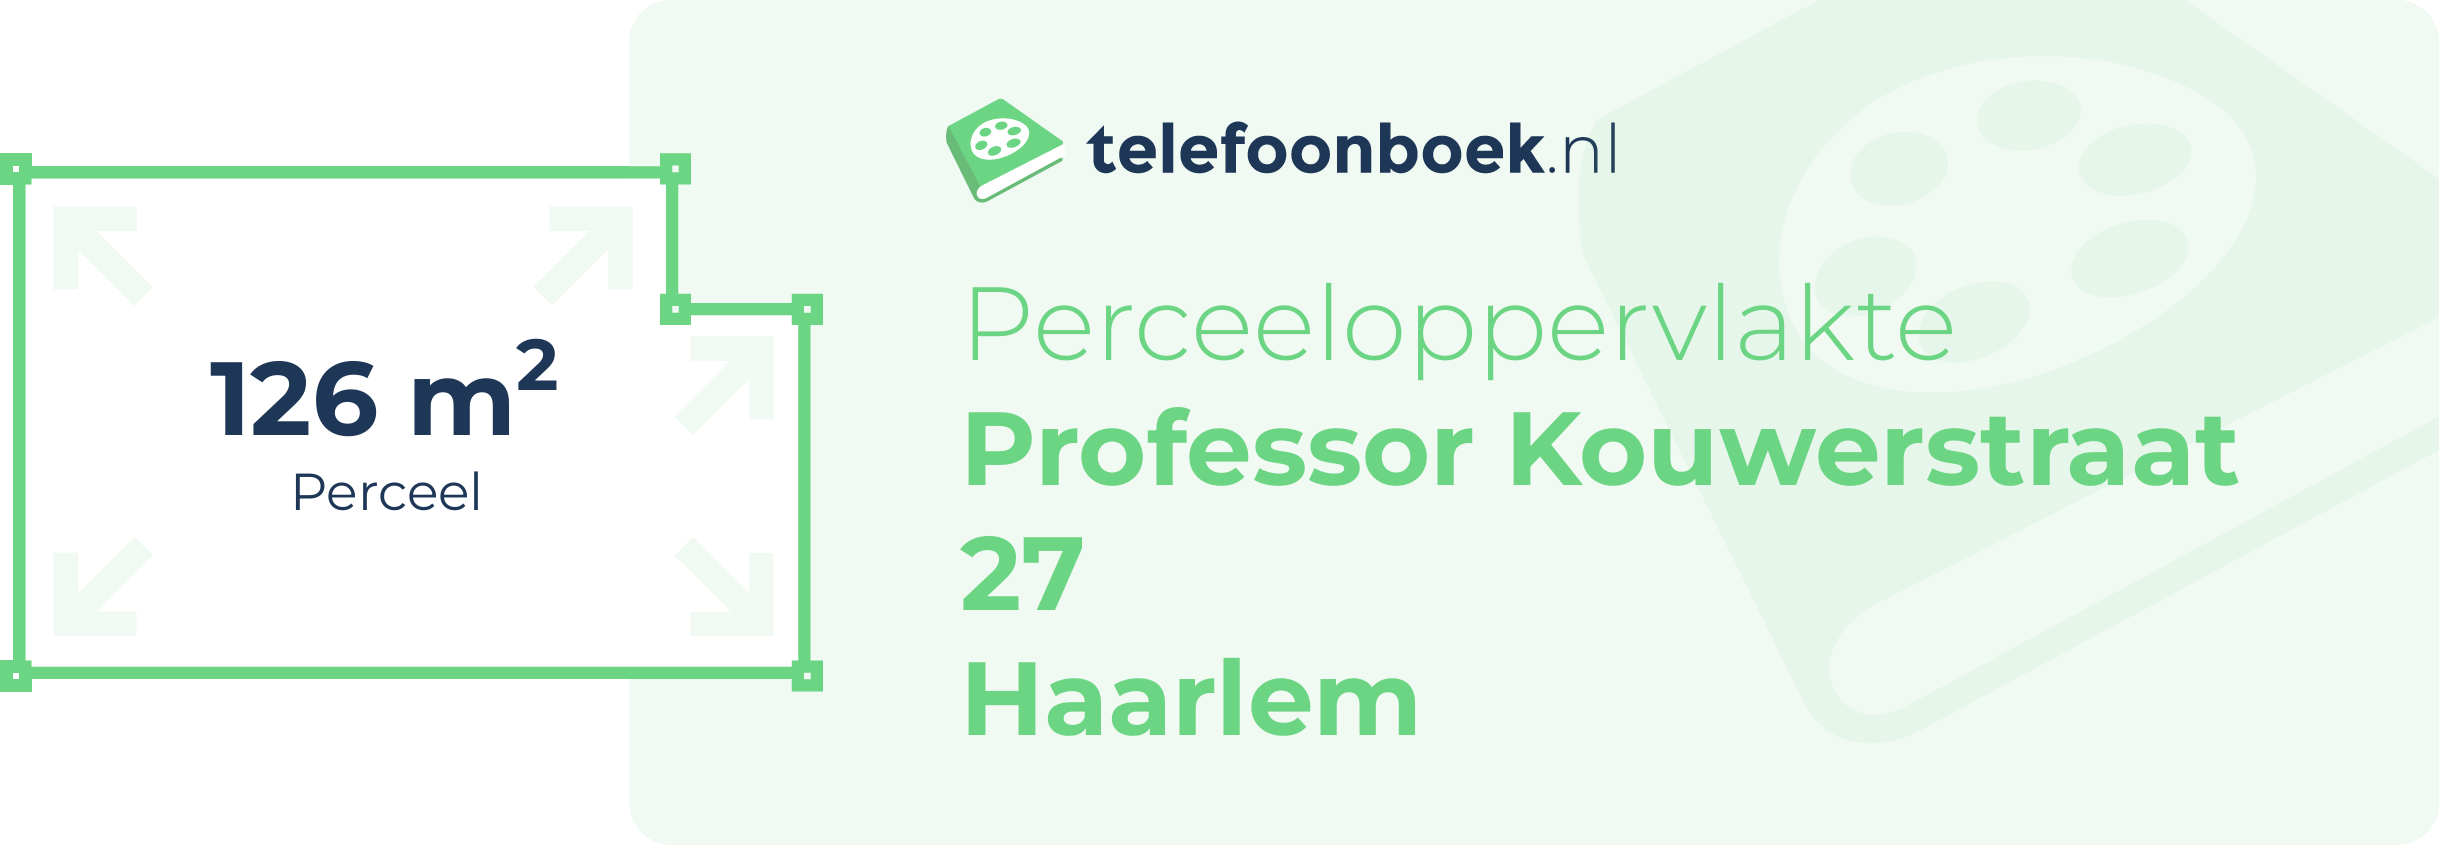 Perceeloppervlakte Professor Kouwerstraat 27 Haarlem